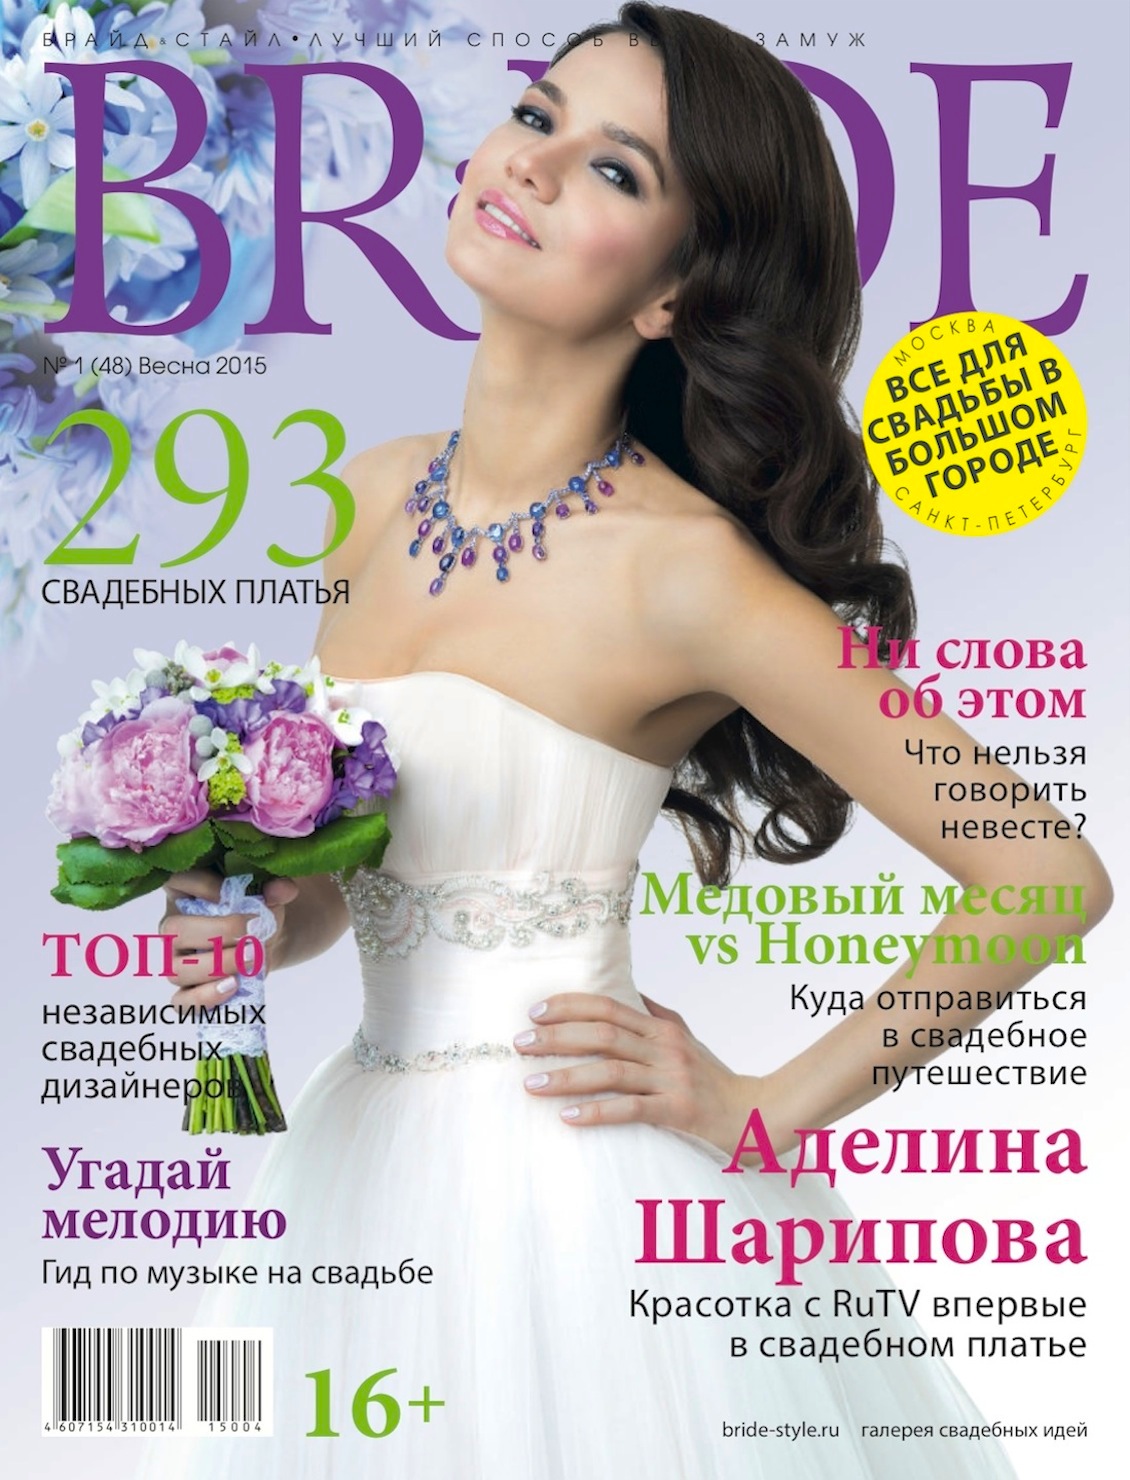 Свадебный журнал BRIDE. Весна 2015